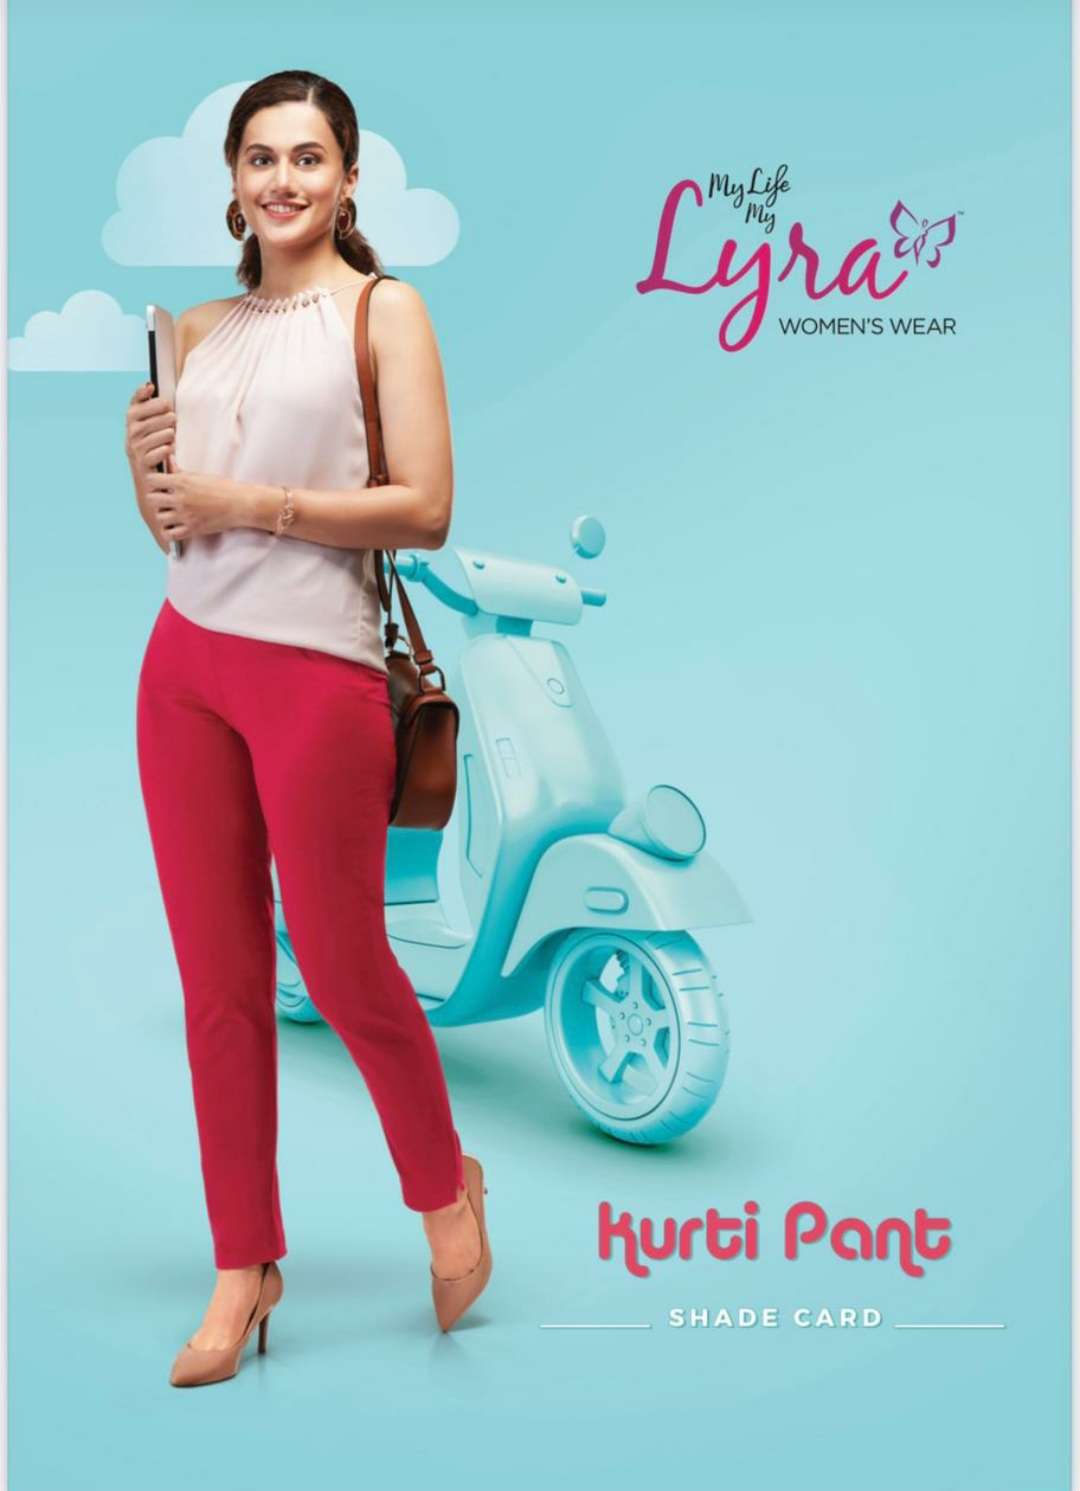 lux lyra kurti pant buy online shopping in india kurti pants 2021 10 19 10 49 45